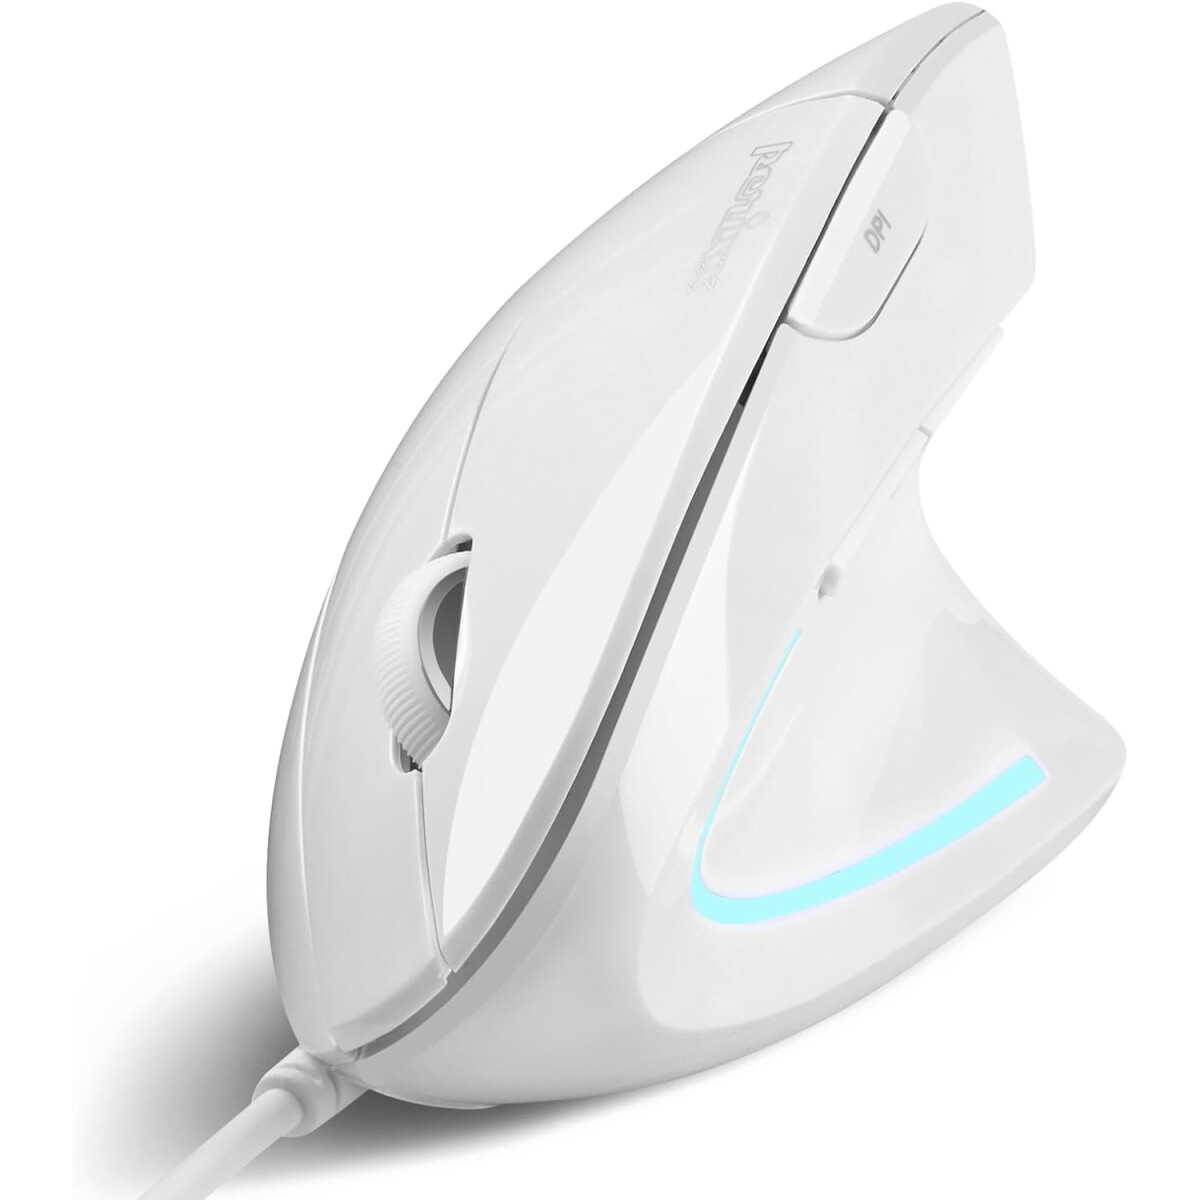 Perixx - Mouse Diestro Ergonómico USB PERIMICE-513 - 1600DPI. Color Blanco. - 001 